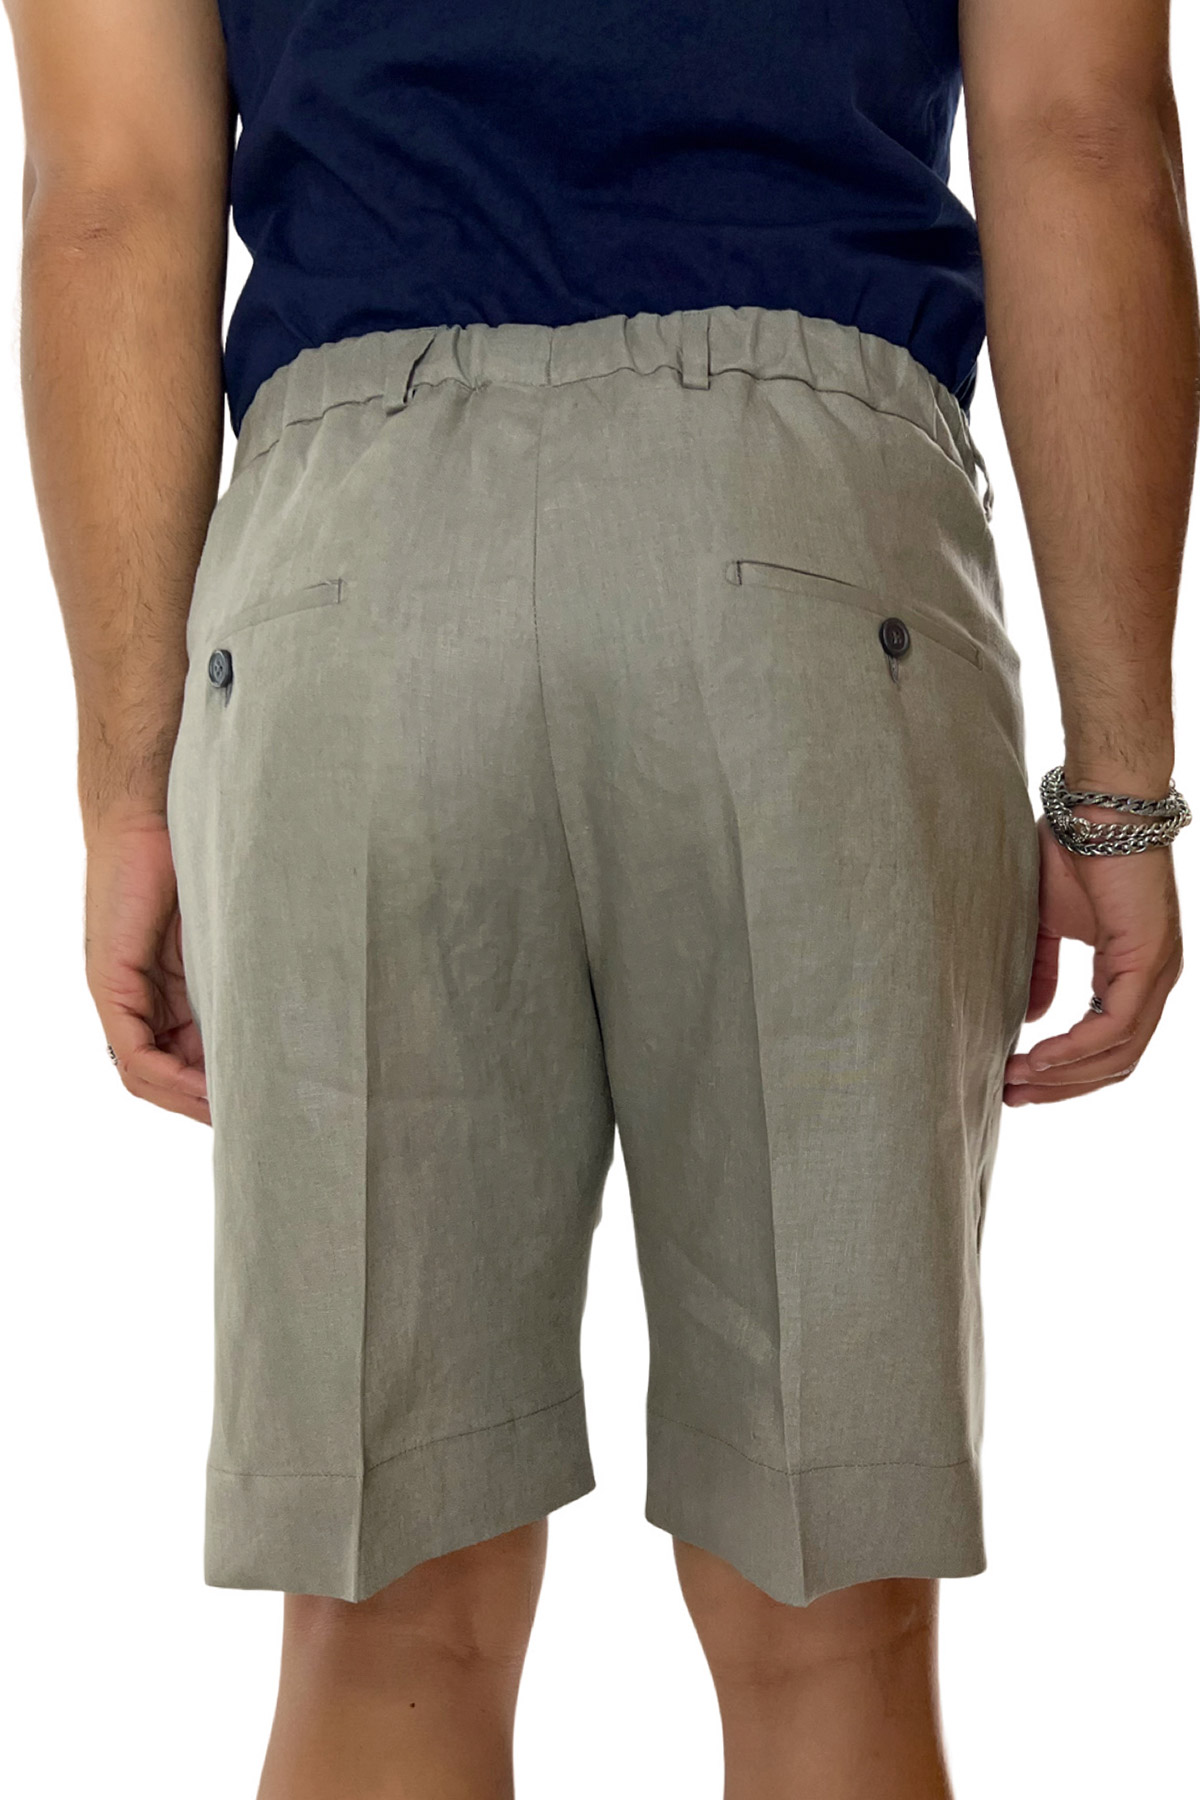 Bermuda uomo verde militare in lino 100% con mezza coulisse doppia pinces e tasca america